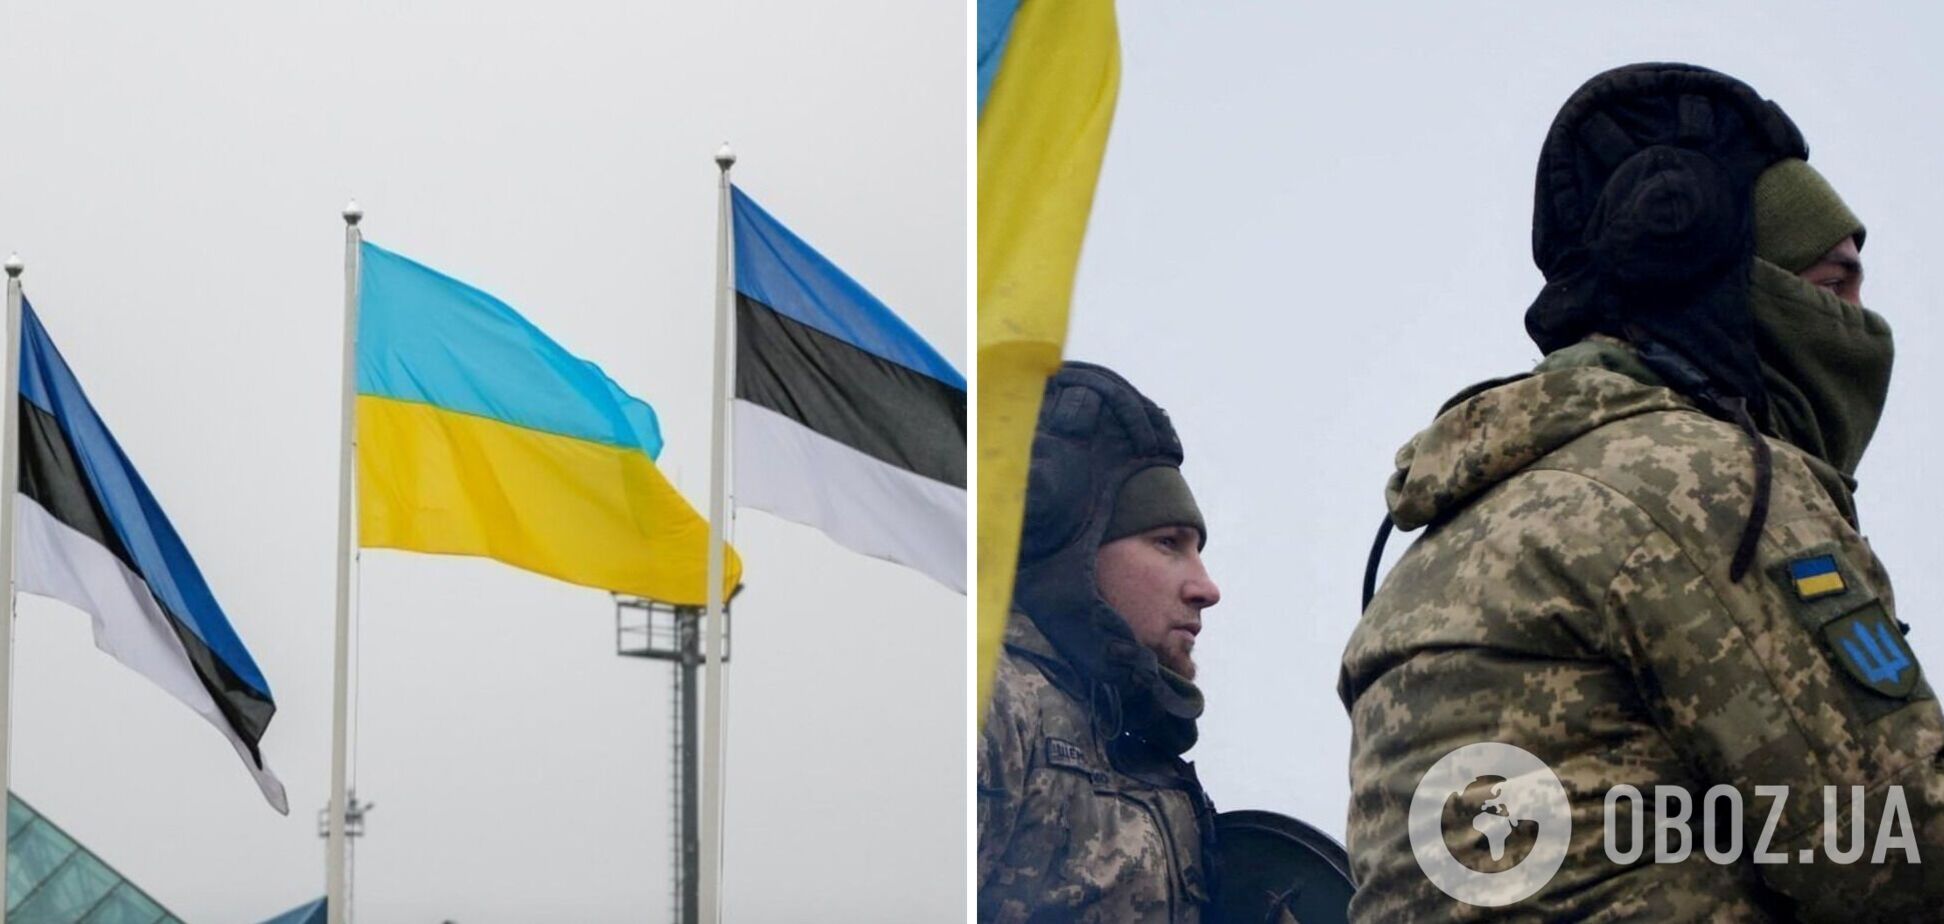 Естонія запросила у Німеччини згоду на постачання в Україну касетних боєприпасів